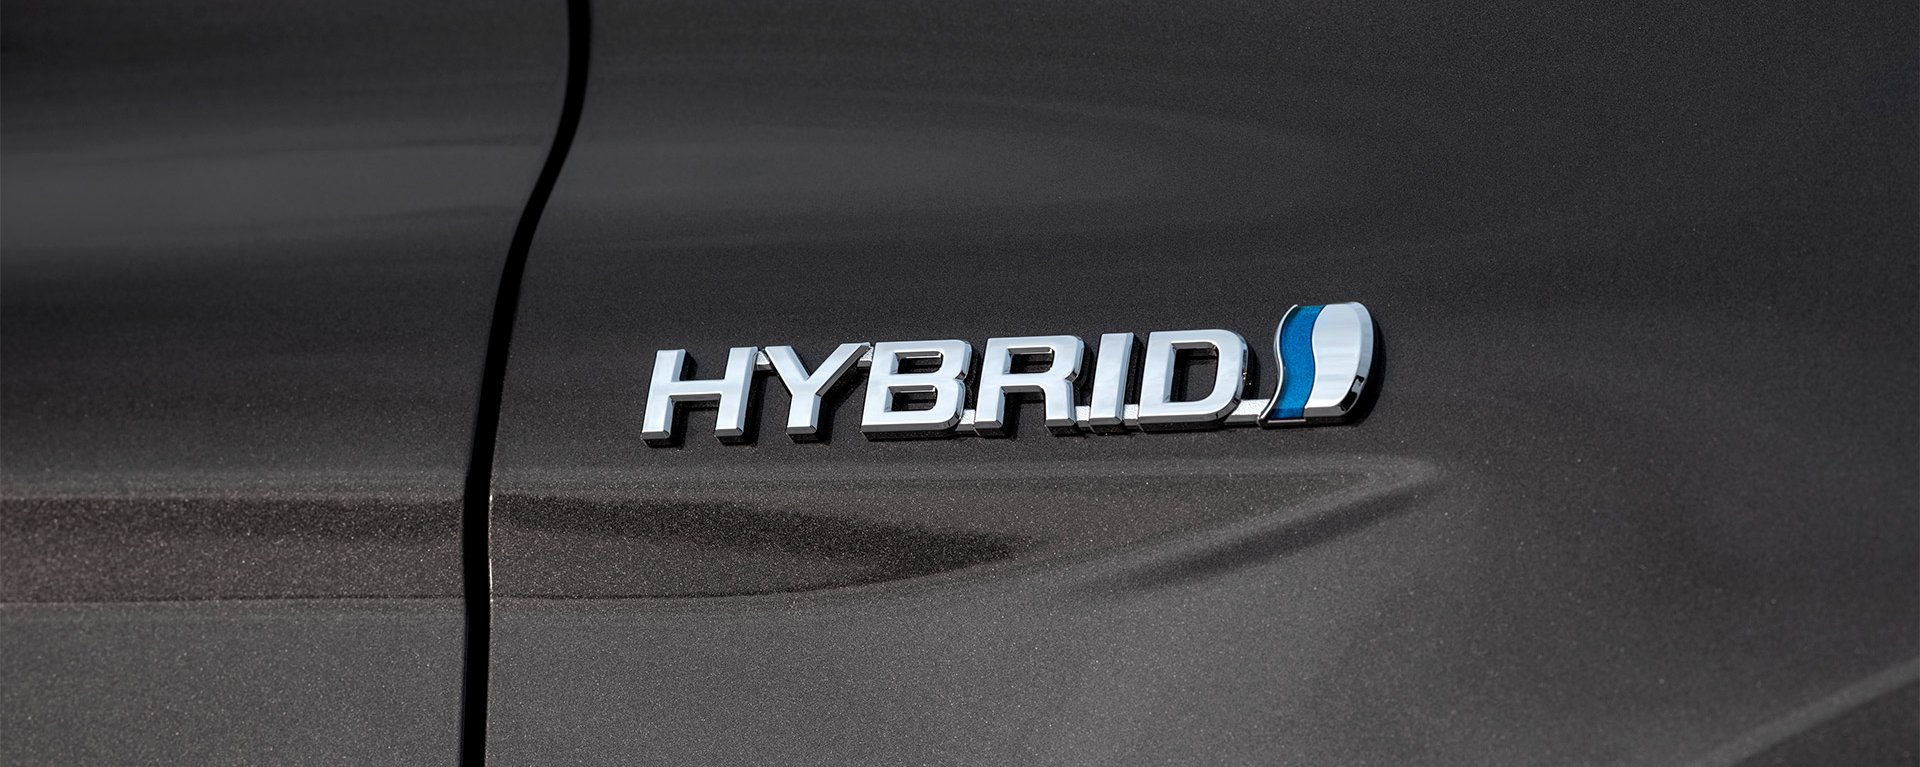 Zu sehen ist eine Nahaufnahme des Wortes HYBRID auf der Seite eines grauen Toyota